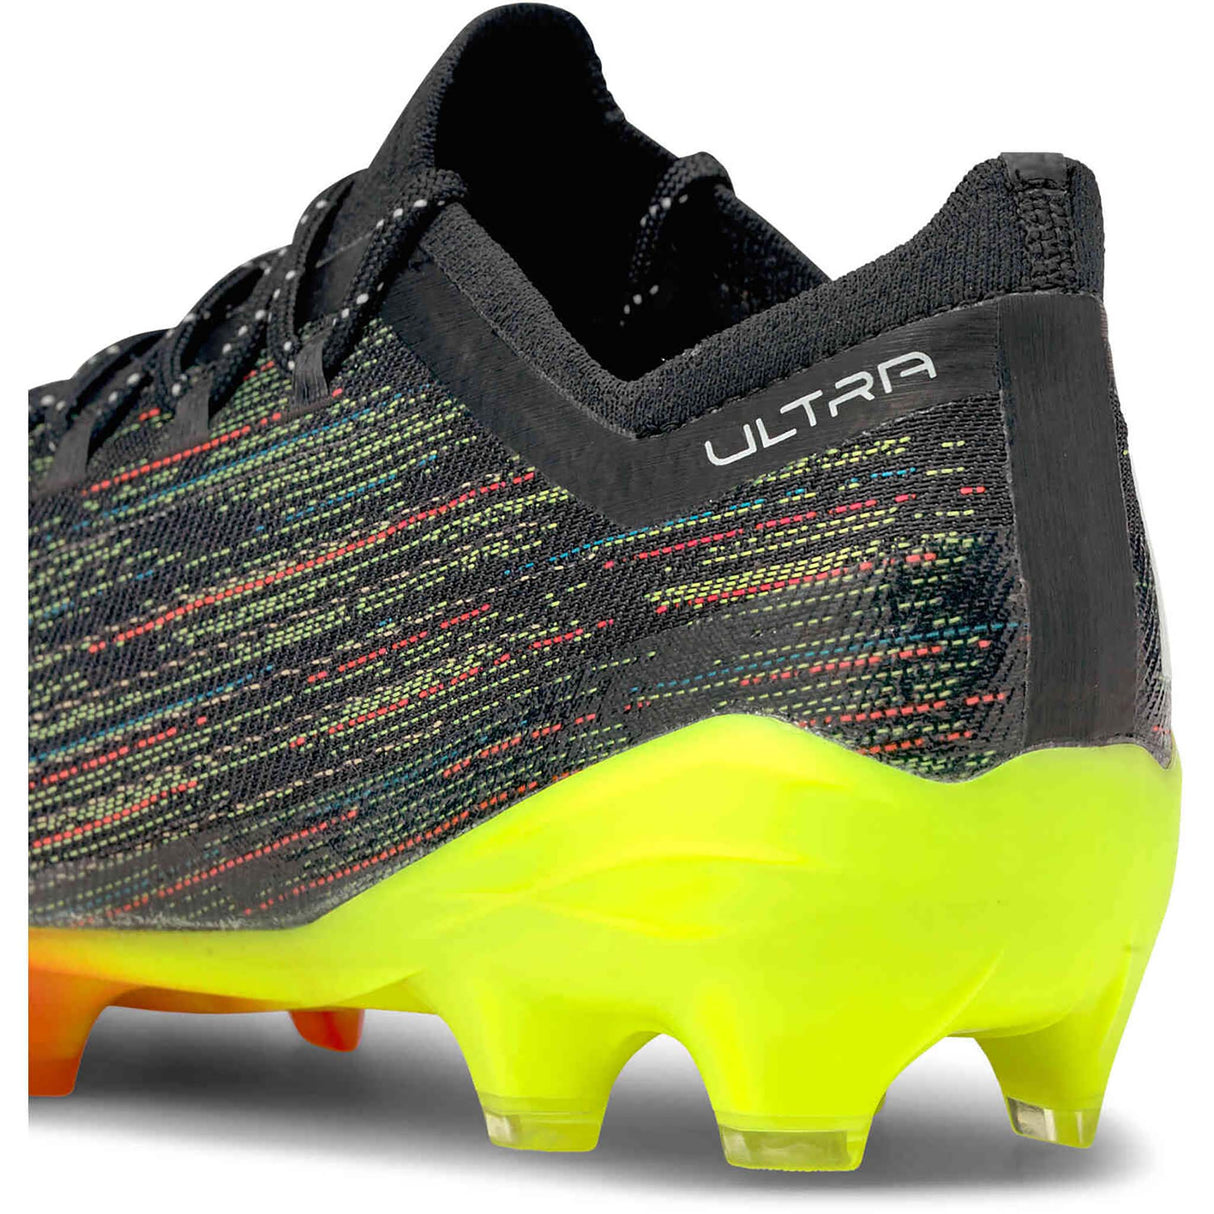 Puma Ultra 1.2 FG chaussures de soccer a crampons noir blanc jaune talon